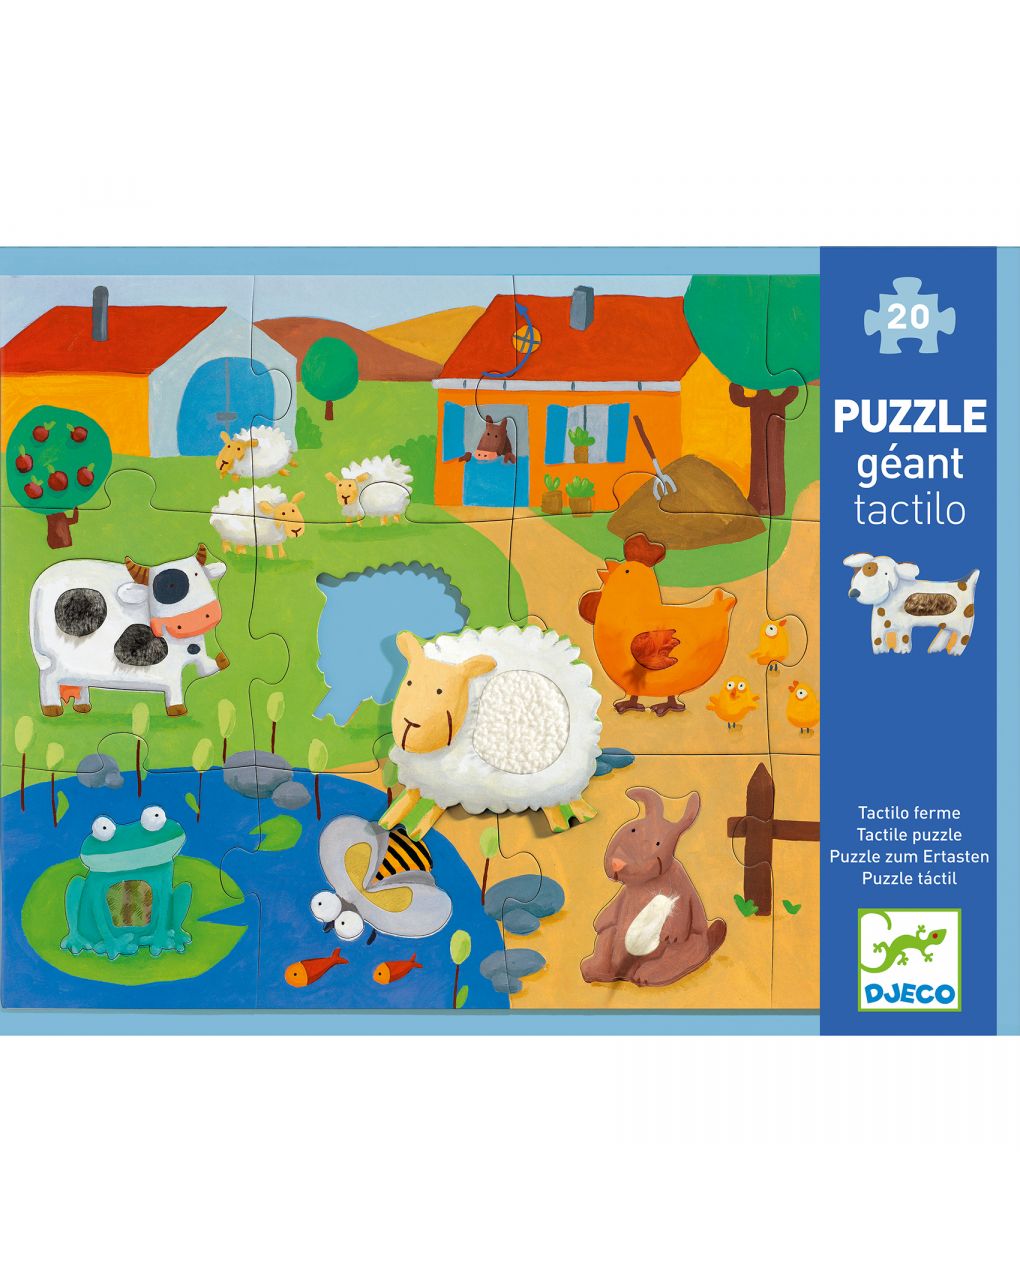 Tactile farm - puzzle gigante da 12 pezzi - djeco - Djeco